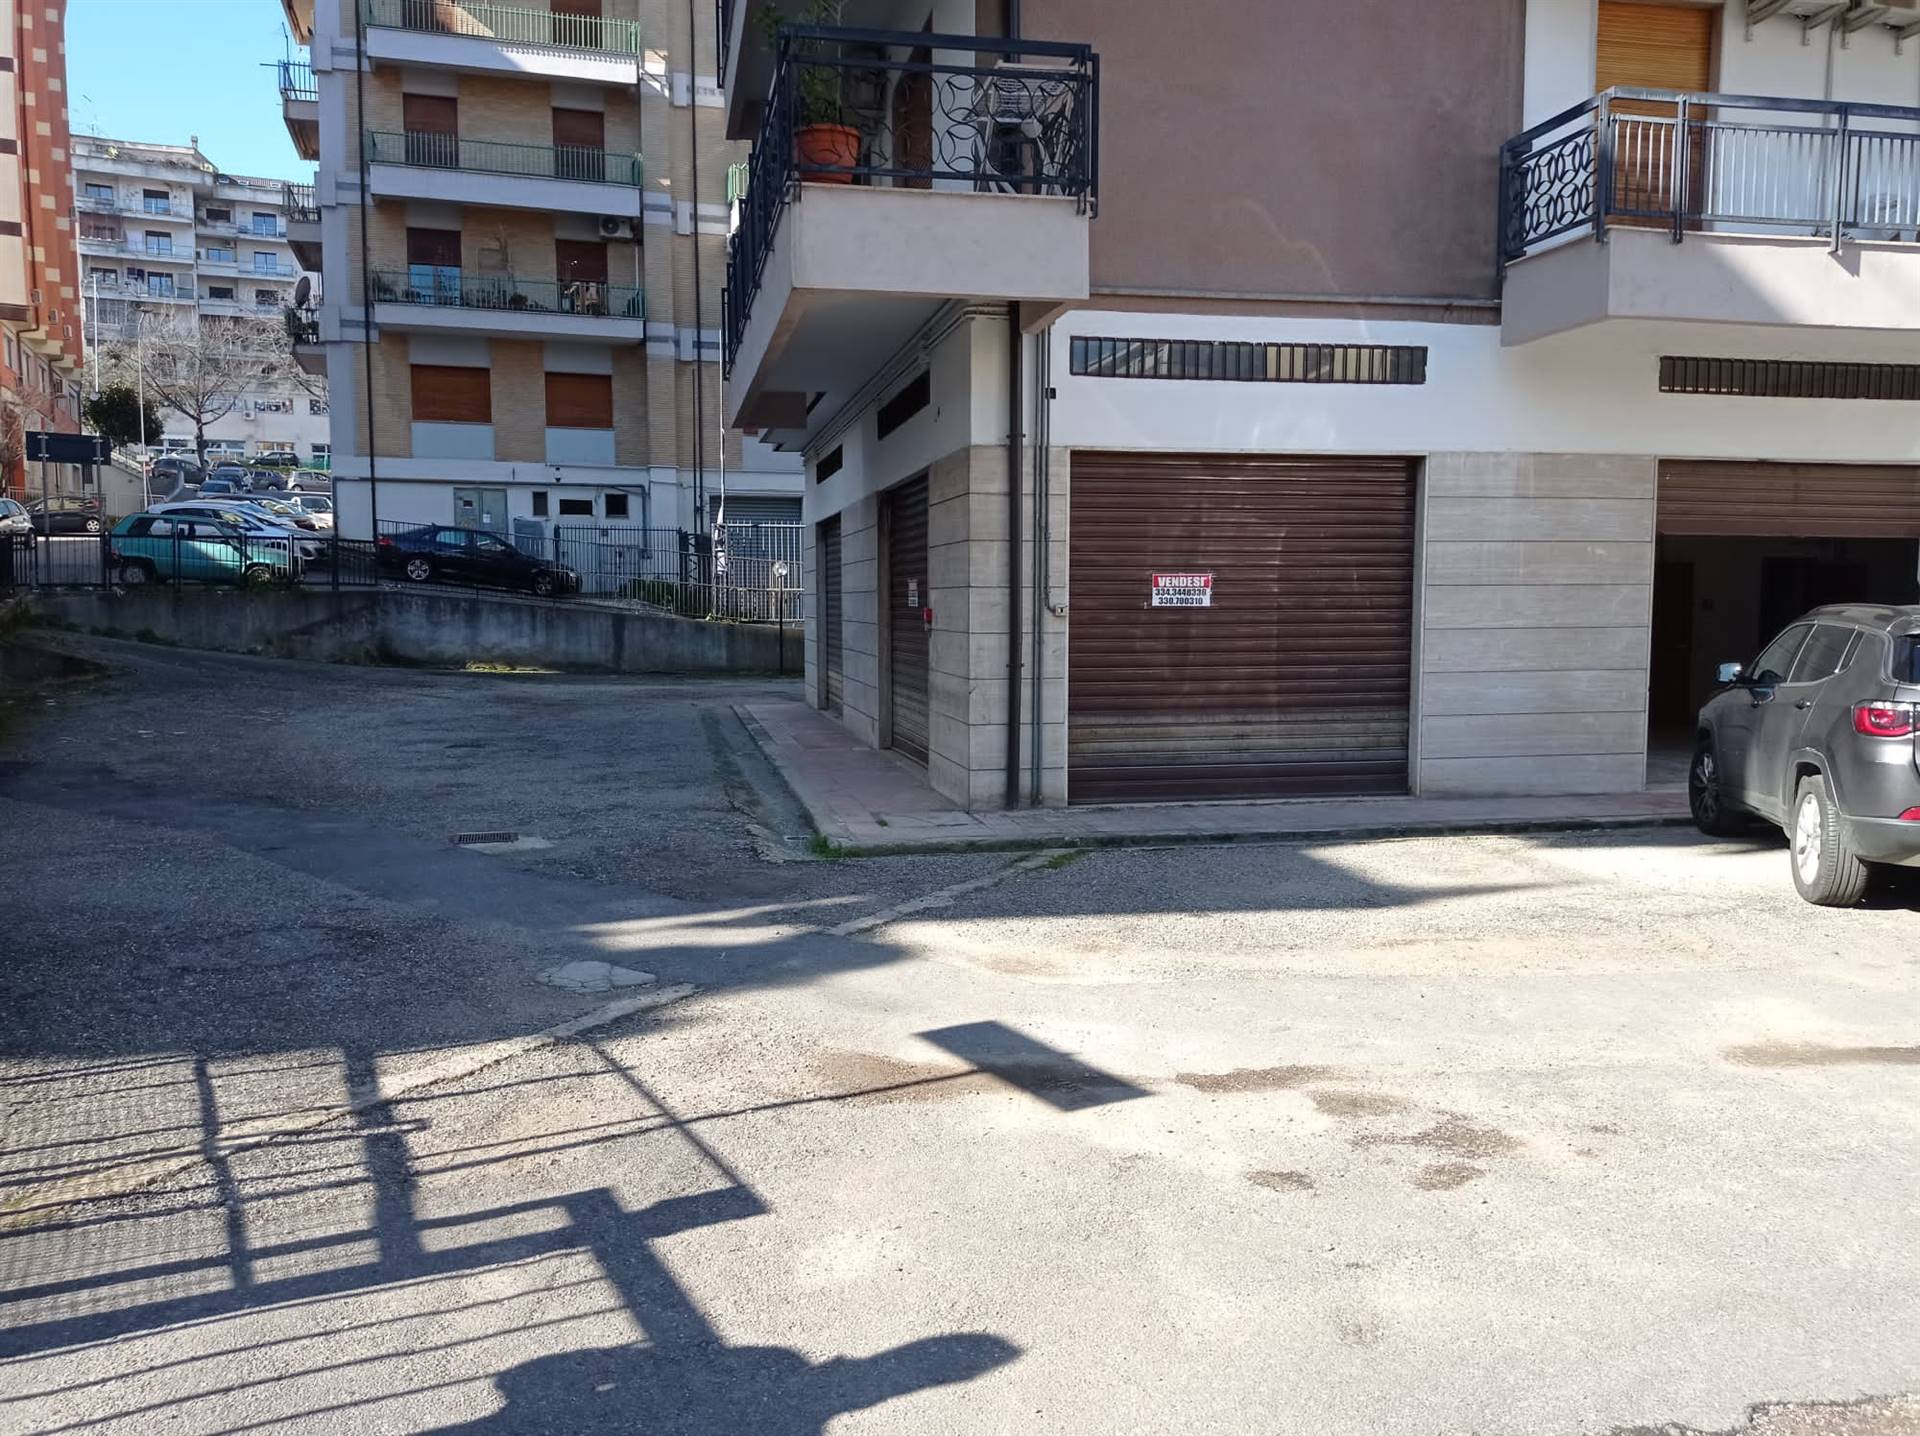 Immobile Commerciale in vendita a Cosenza, 1 locali, zona Panebianco, prezzo € 27.000 | PortaleAgenzieImmobiliari.it